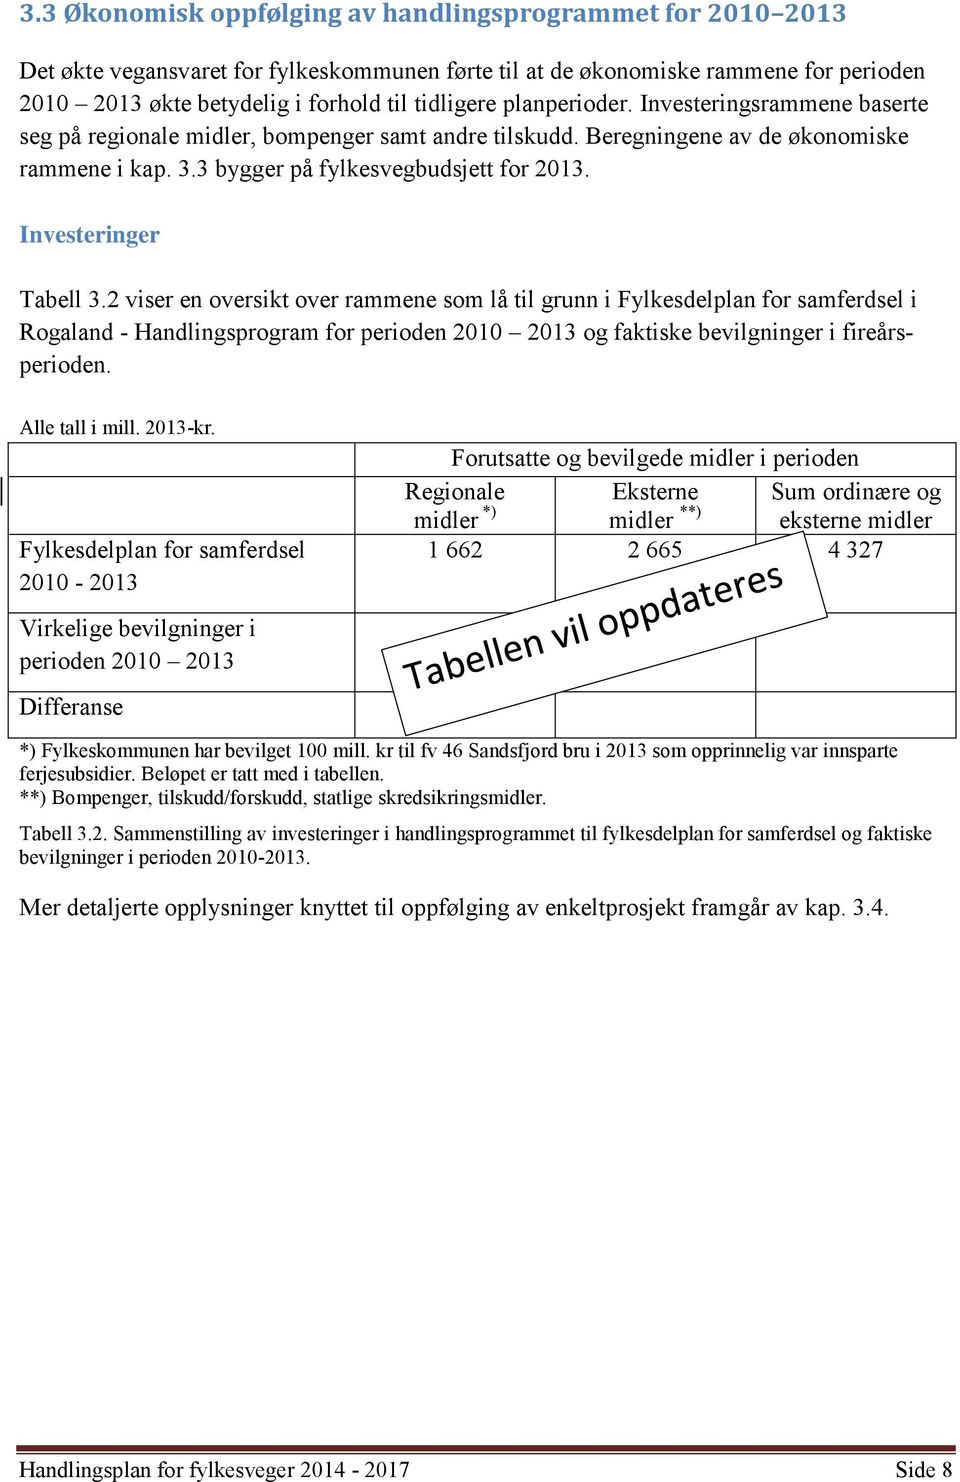 Investeringer Tabell 3.2 viser en oversikt over rammene som lå til grunn i Fylkesdelplan for samferdsel i Rogaland - Handlingsprogram for perioden 2010 2013 og faktiske bevilgninger i fireårsperioden.